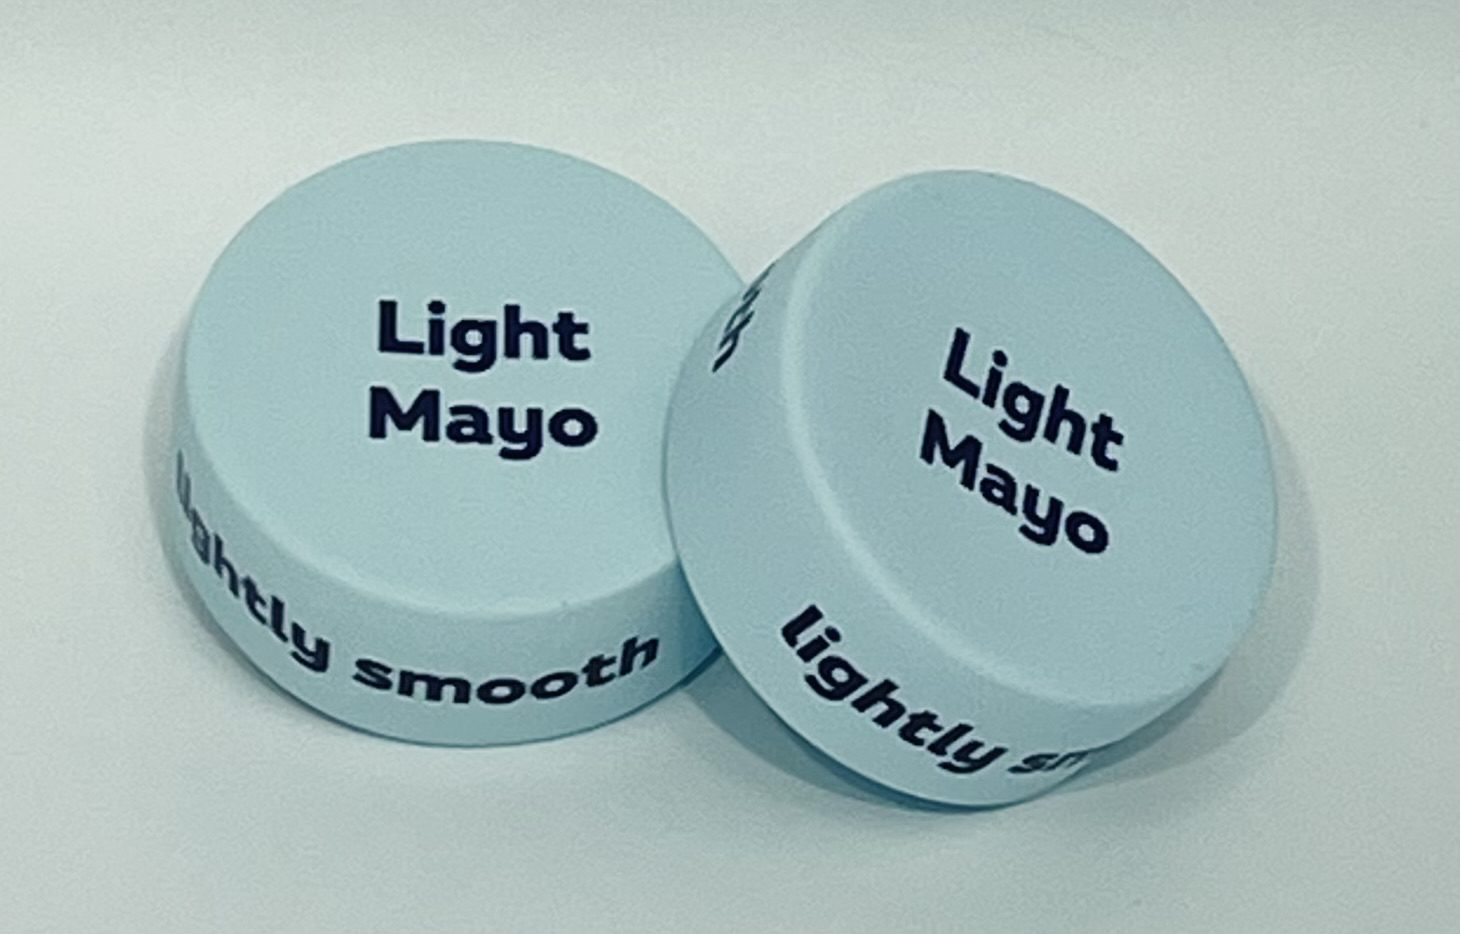 Light Mayo